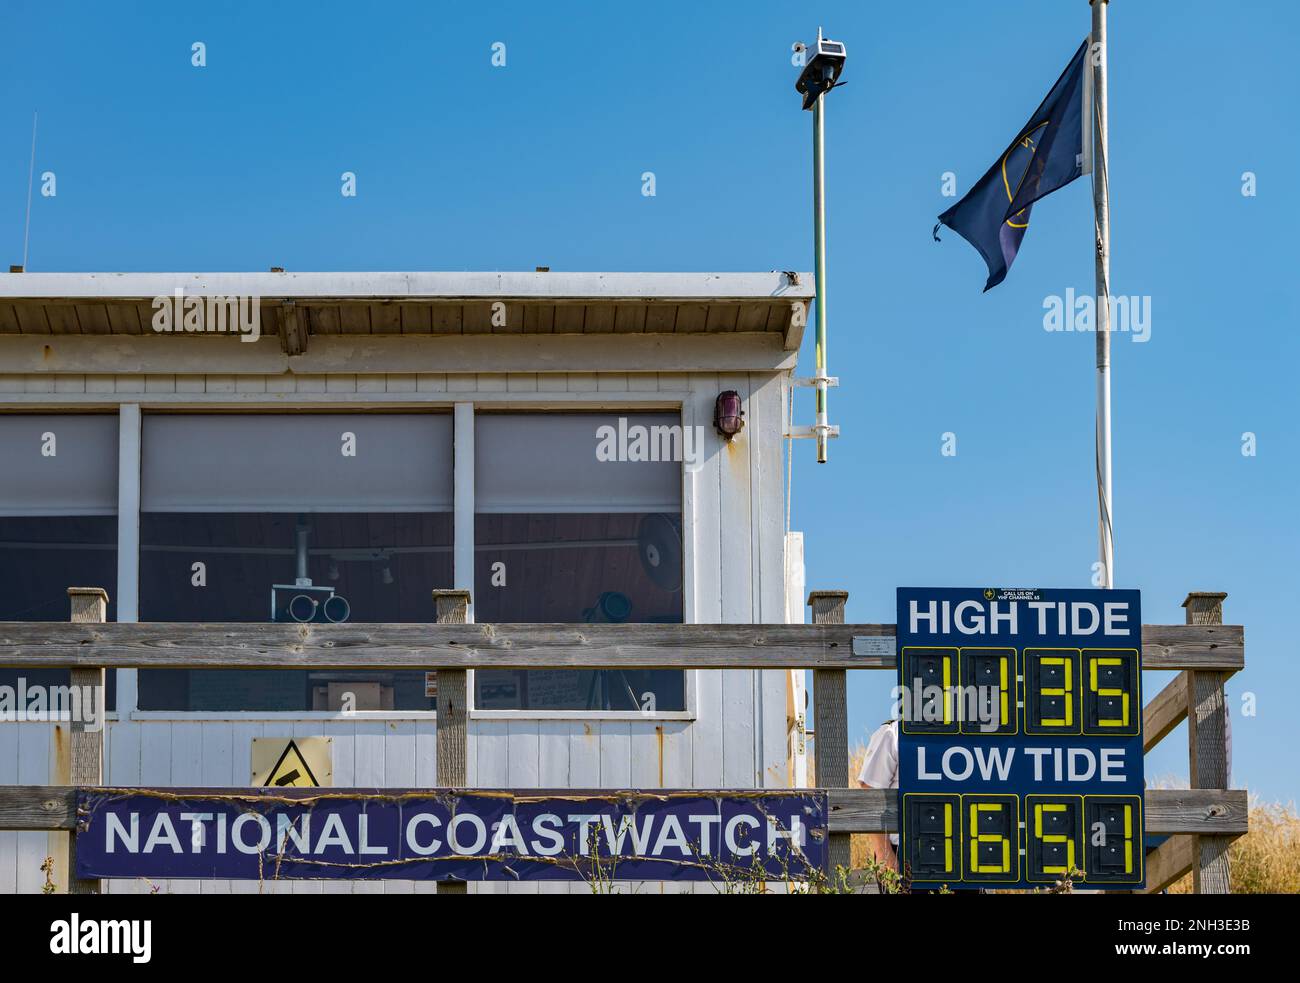 National Coastwatch oder Coastguard Überwachungshütte mit Gezeitenzeiten, Hive Beach, Burton Bradstock, Dorset, England, UK Stockfoto